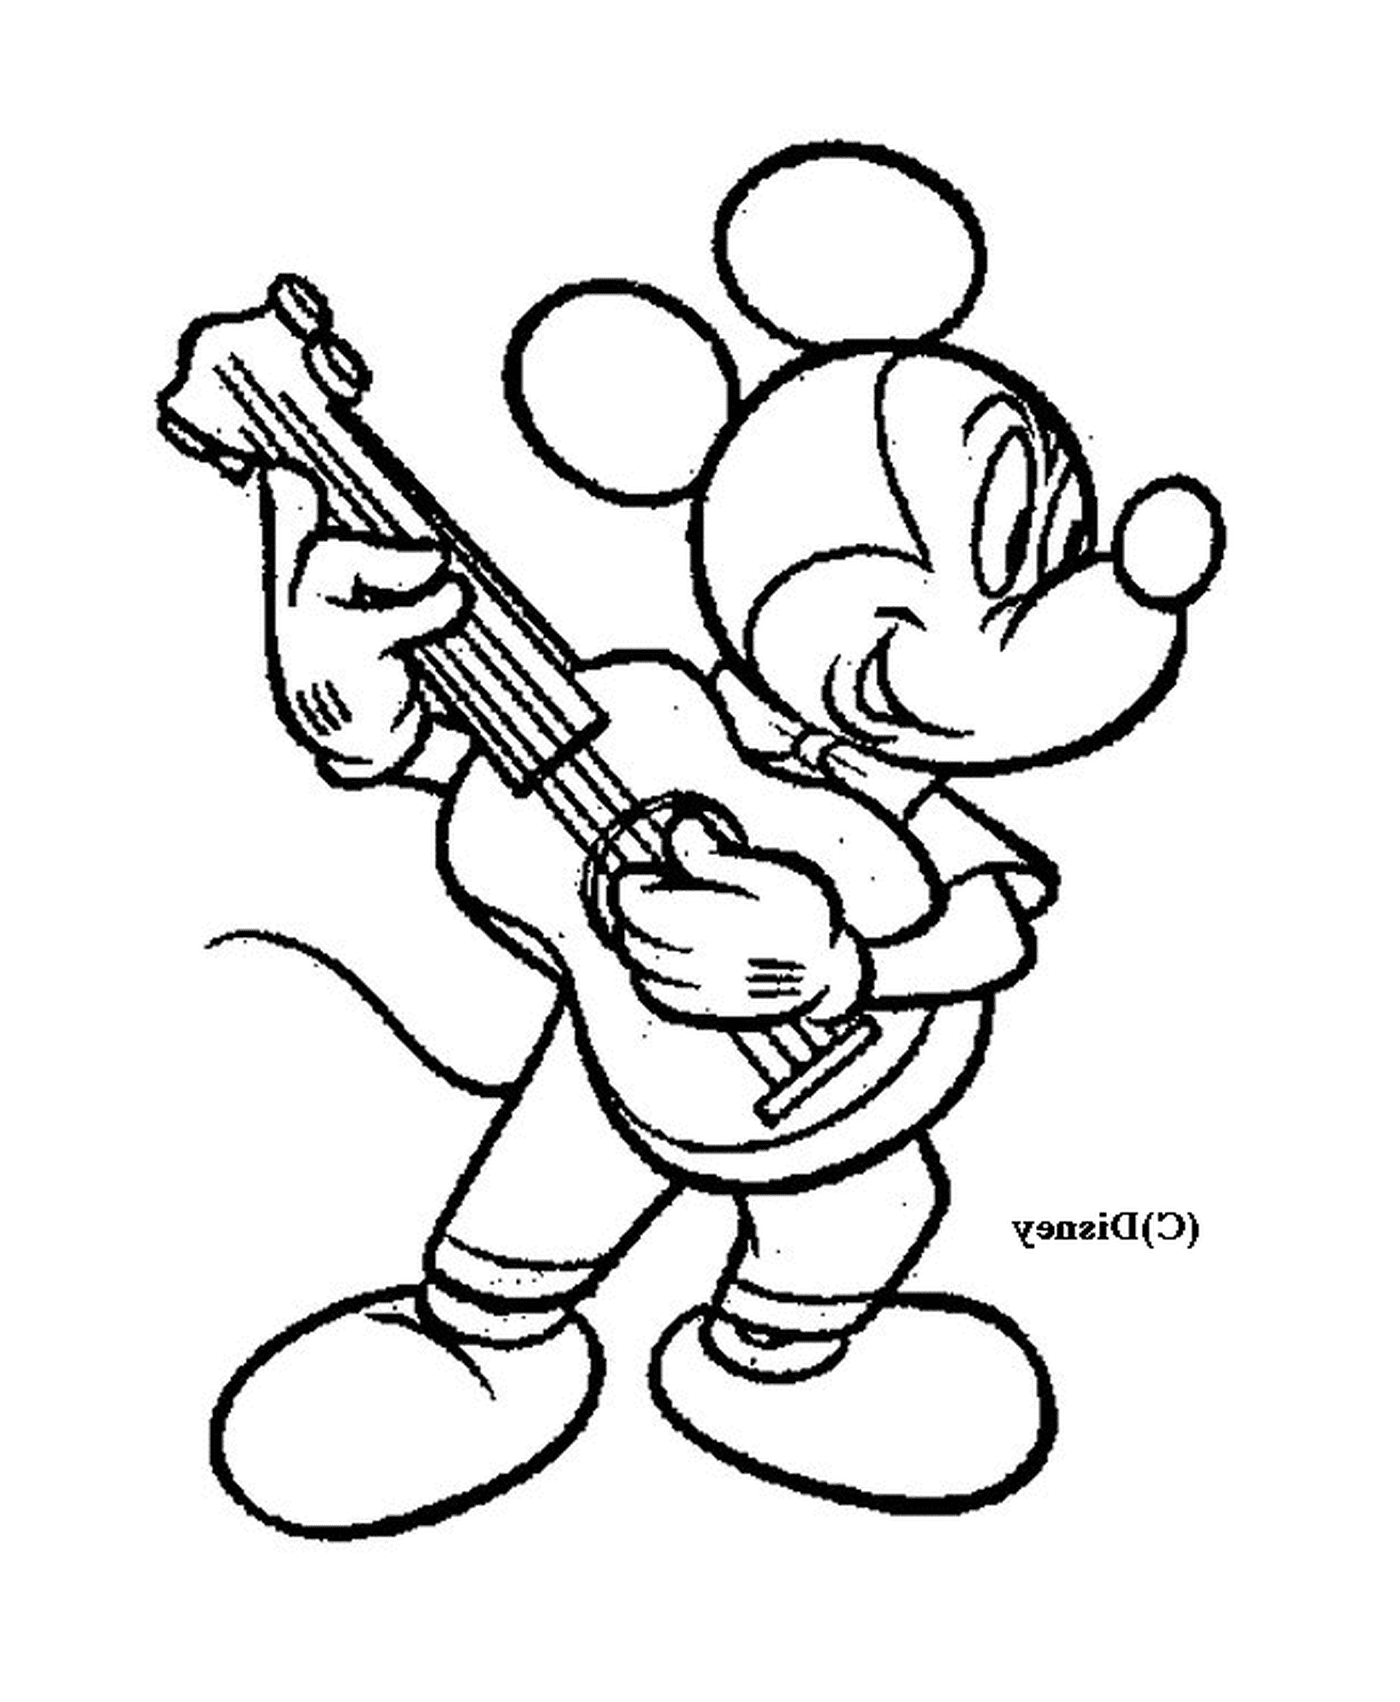  米奇弹吉他:米老鼠弹吉他 